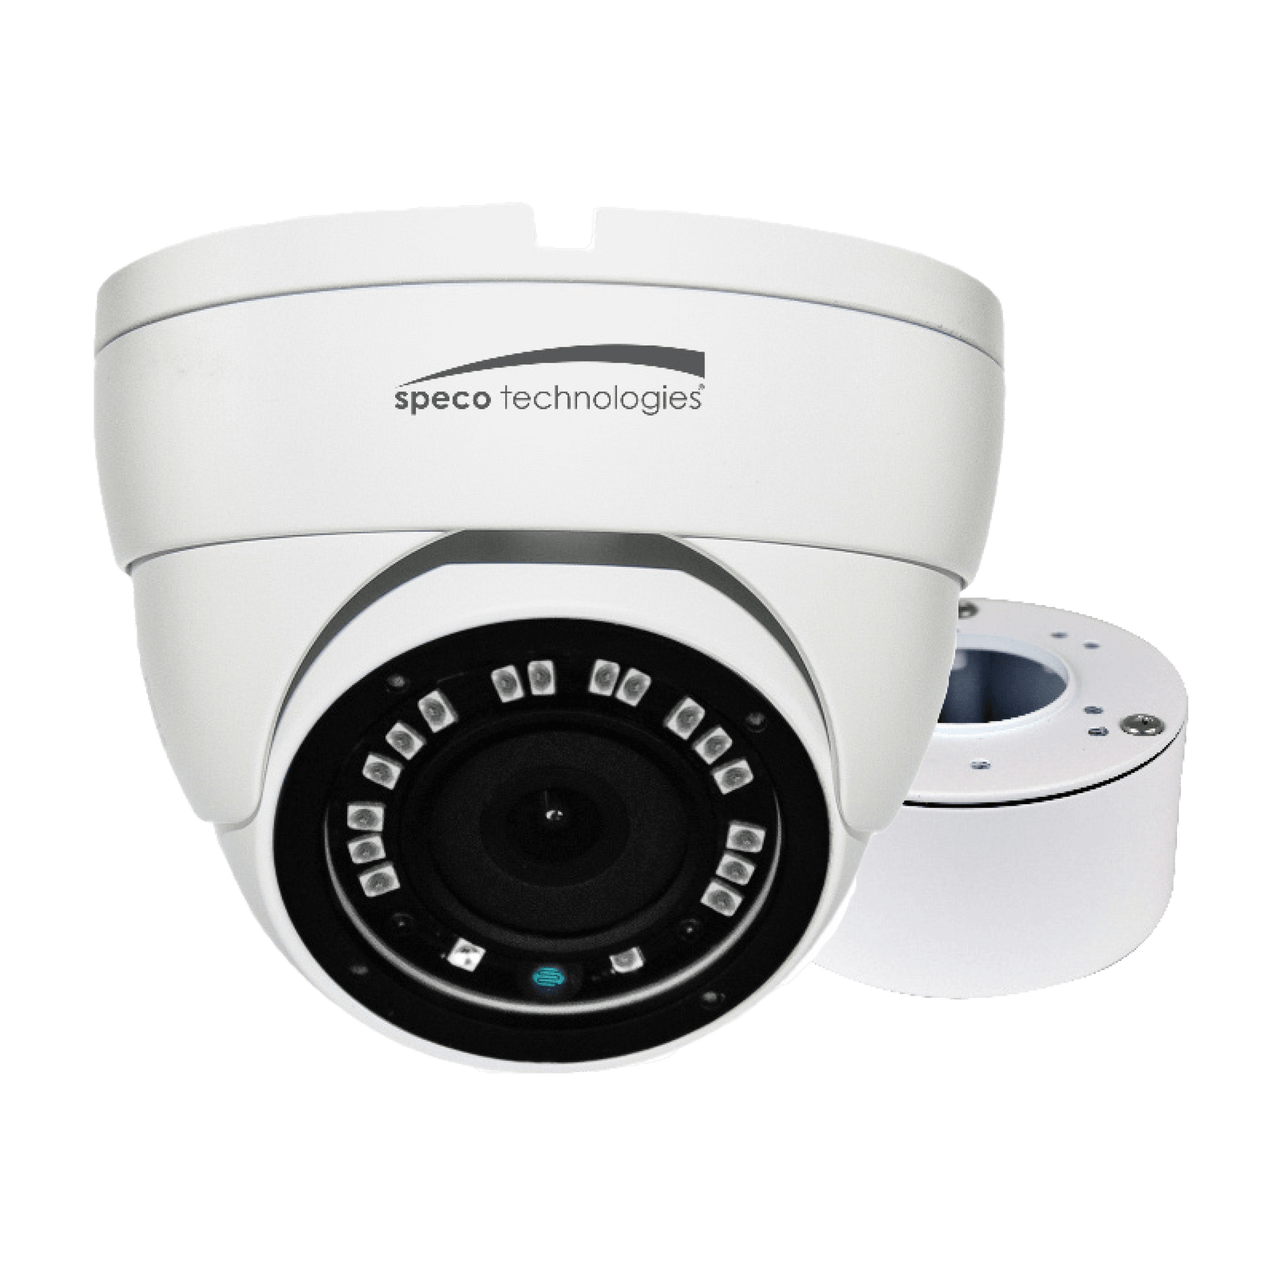 Speco Technologies VLDT4W 2MP HD-TVI Eyeball Camera, 3.6mm Lens, Included Junc Box, UL, White Housing (VLDT4W)